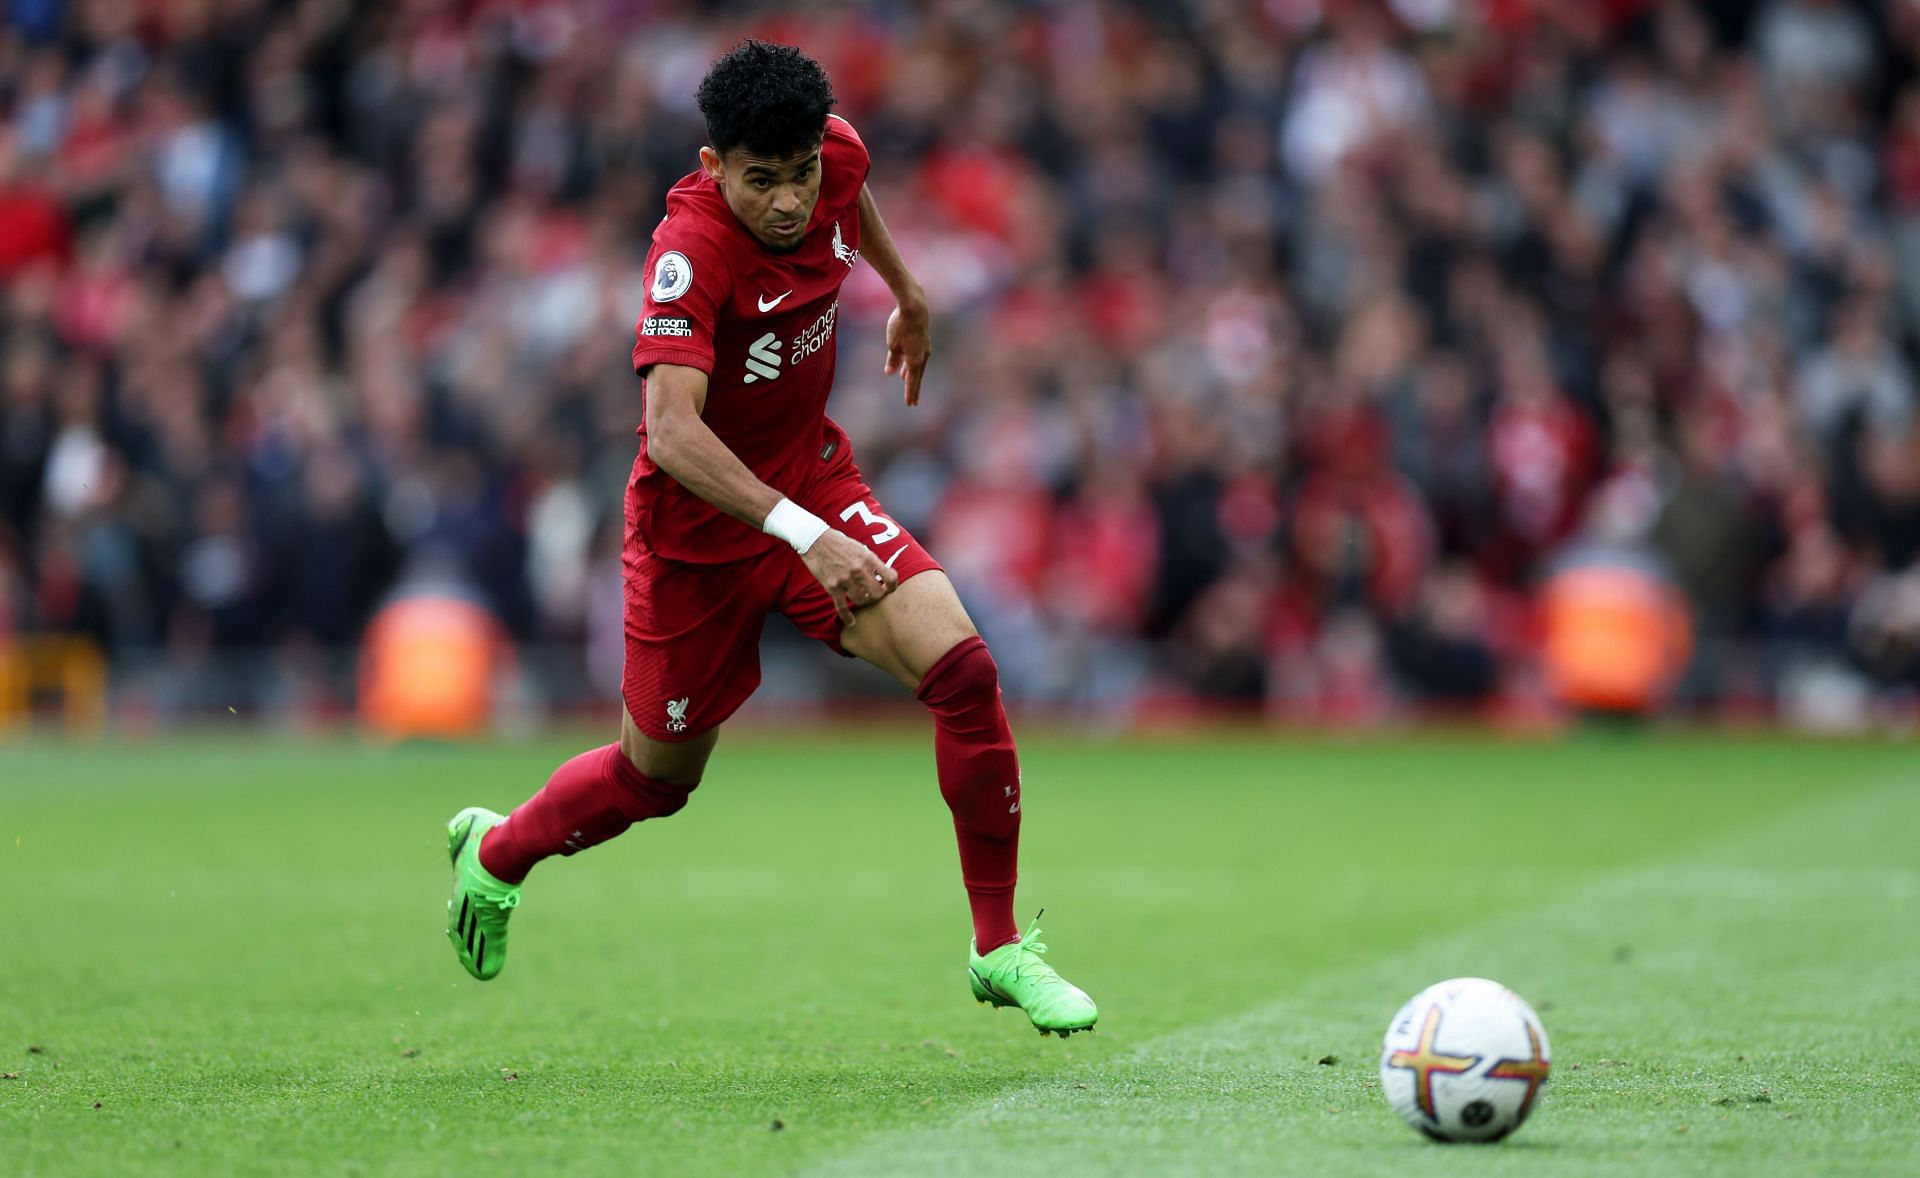 Luis Diaz looks set to make a return to Premier League action.